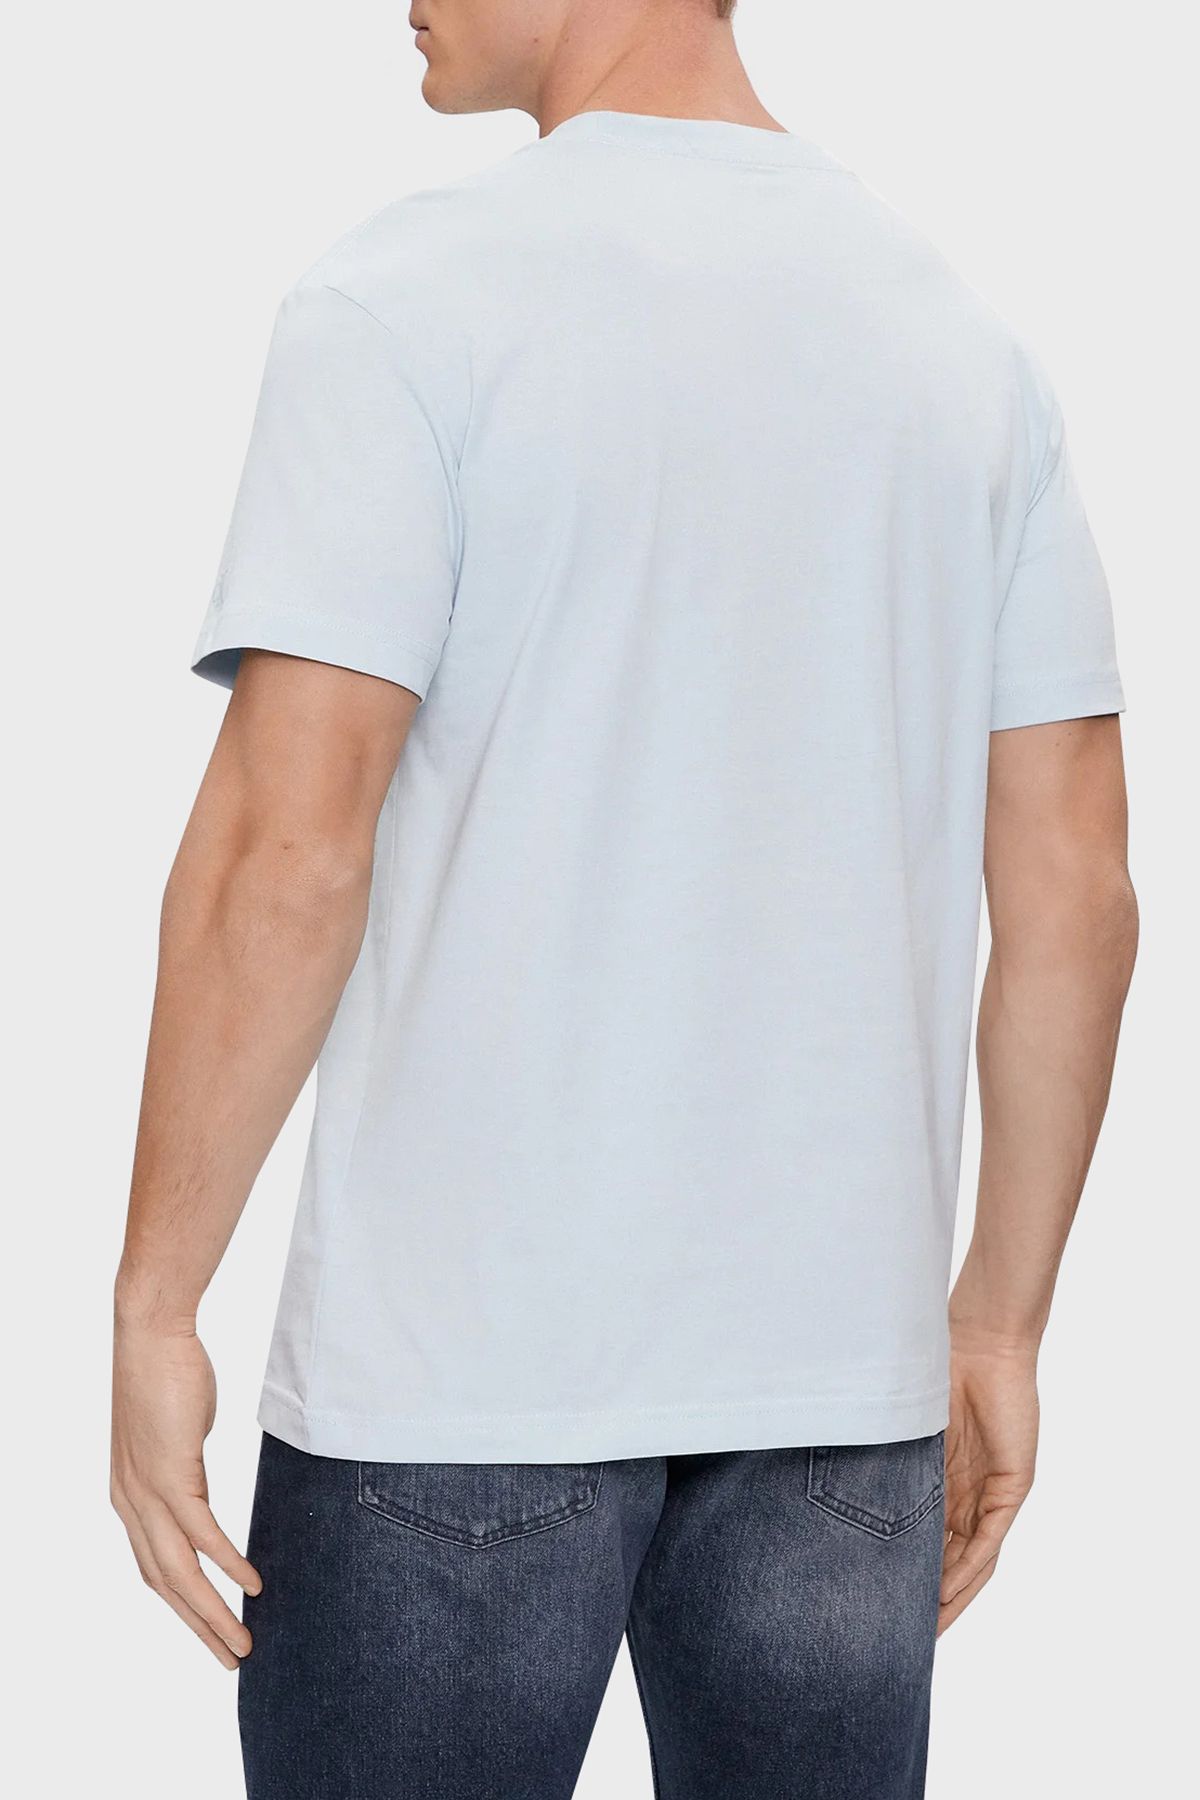 Calvin Klein Calvin Klein تی شرت مردانه چرخ دوچرخه ای مناسب کتانی مناسب برای استفاده روزمره